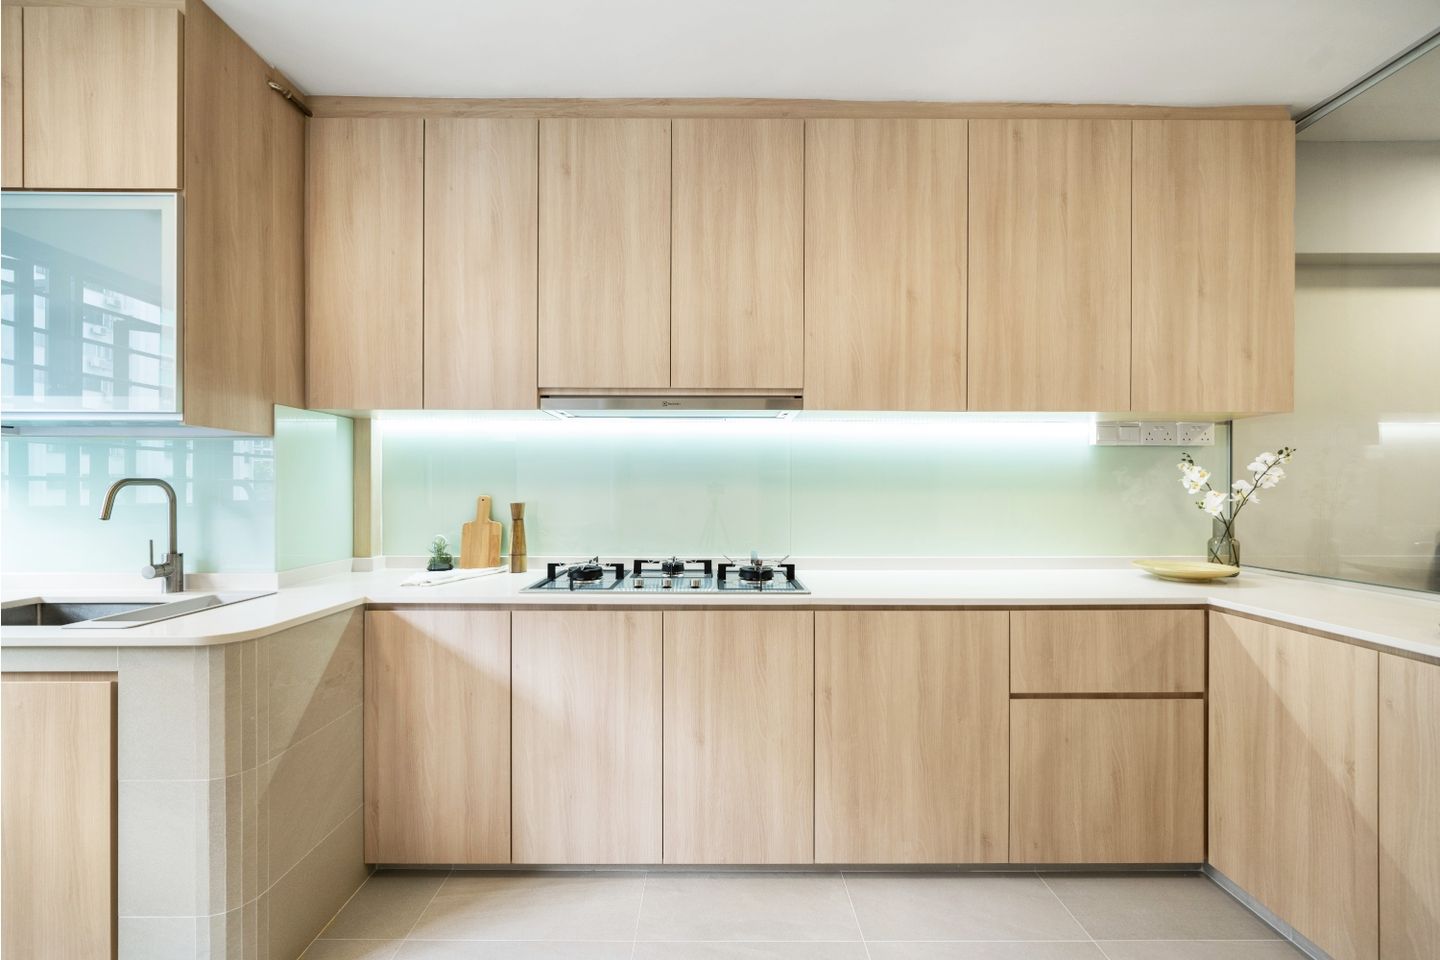 U-Shaped Scandinavian Kitchen Design With Wooden Storage - Livspace